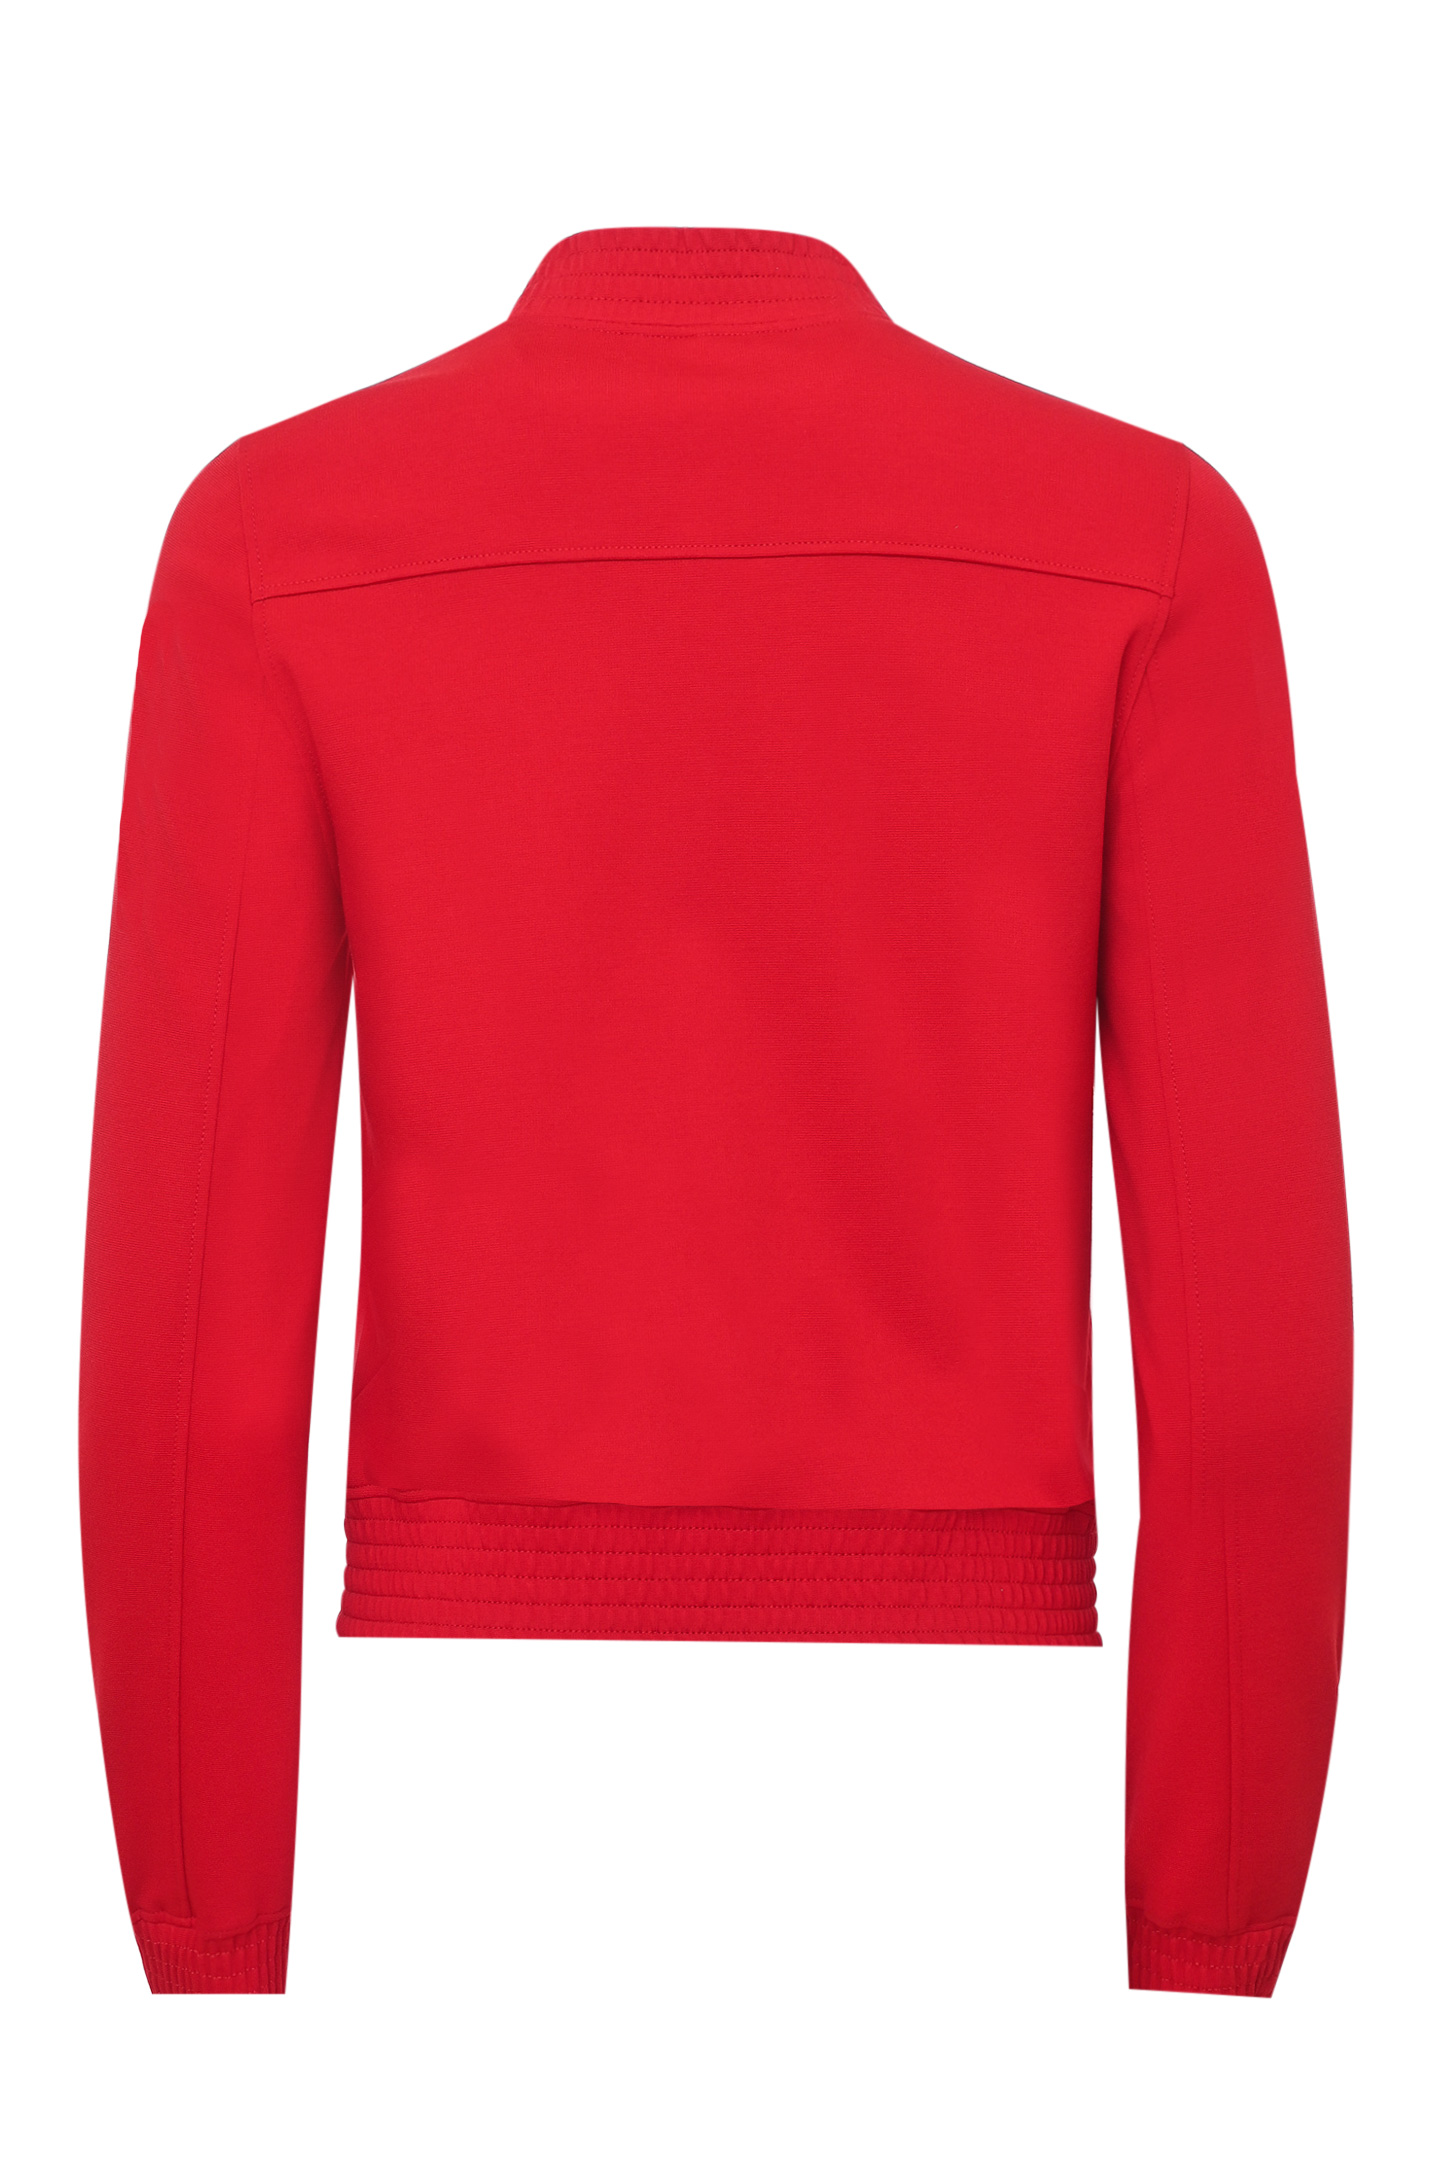 Куртка DOLCE & GABBANA F9L01T GDO95, цвет: Красный, Женский